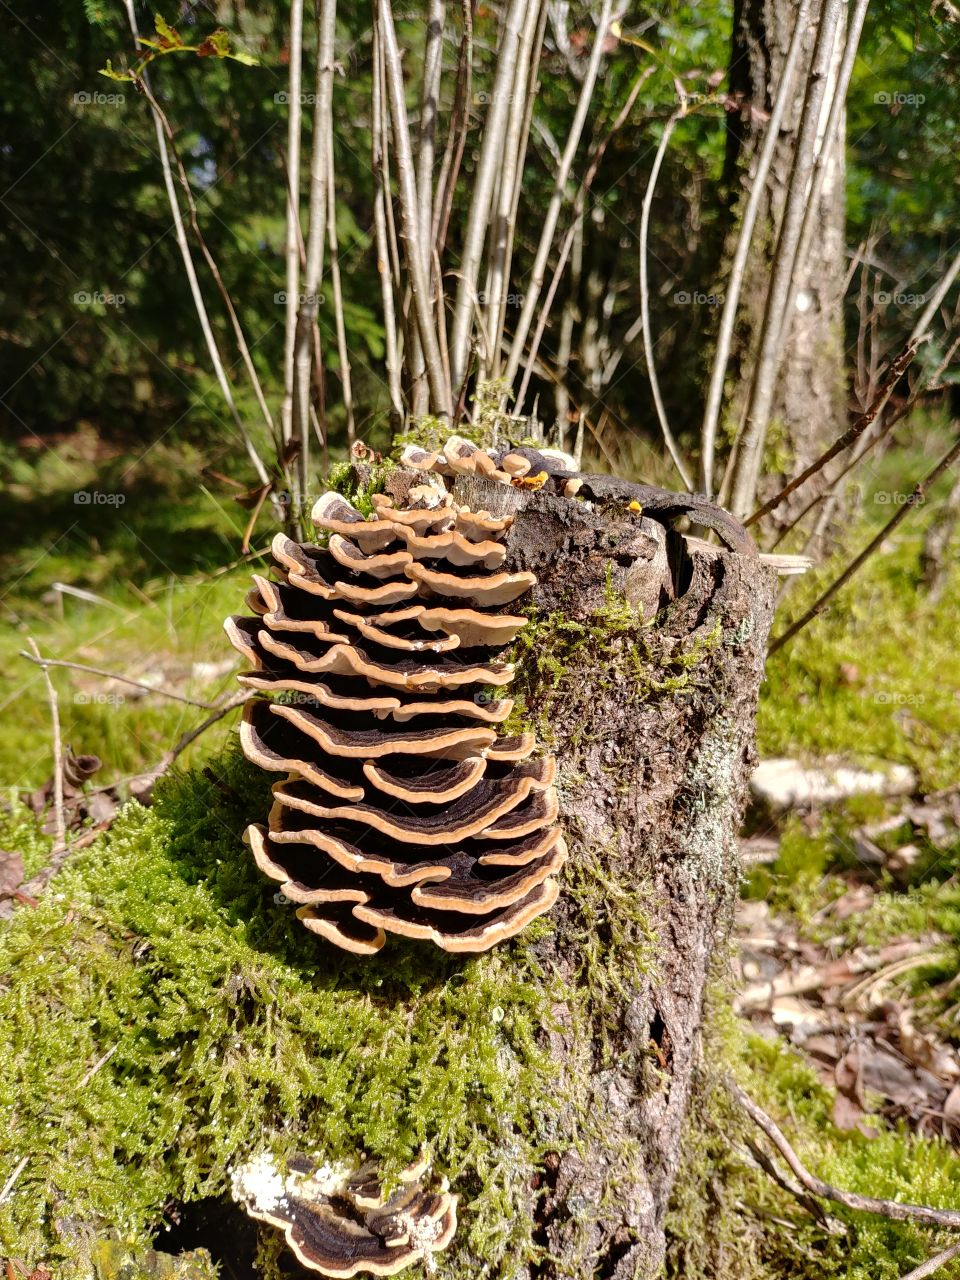 Nature, Wood, Fungus, Mushroom, Tree